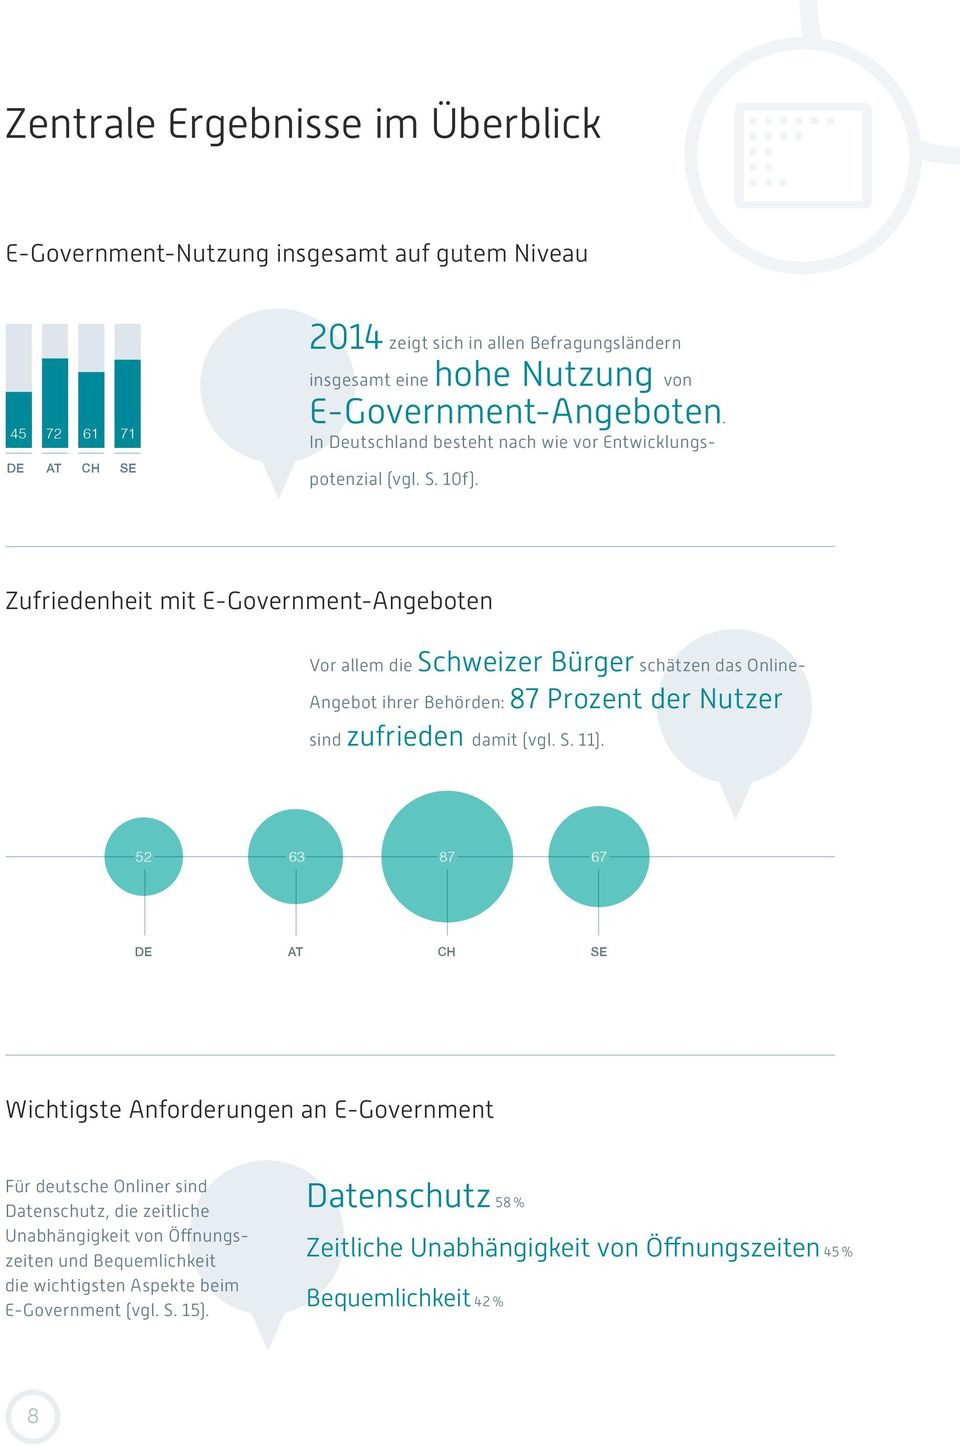 Zufriedenheit mit E-Government-Angeboten Vor allem die Schweizer Bürger schätzen das Online- Angebot ihrer Behörden: 87 Prozent der Nutzer sind zufrieden damit (vgl. S. 11).